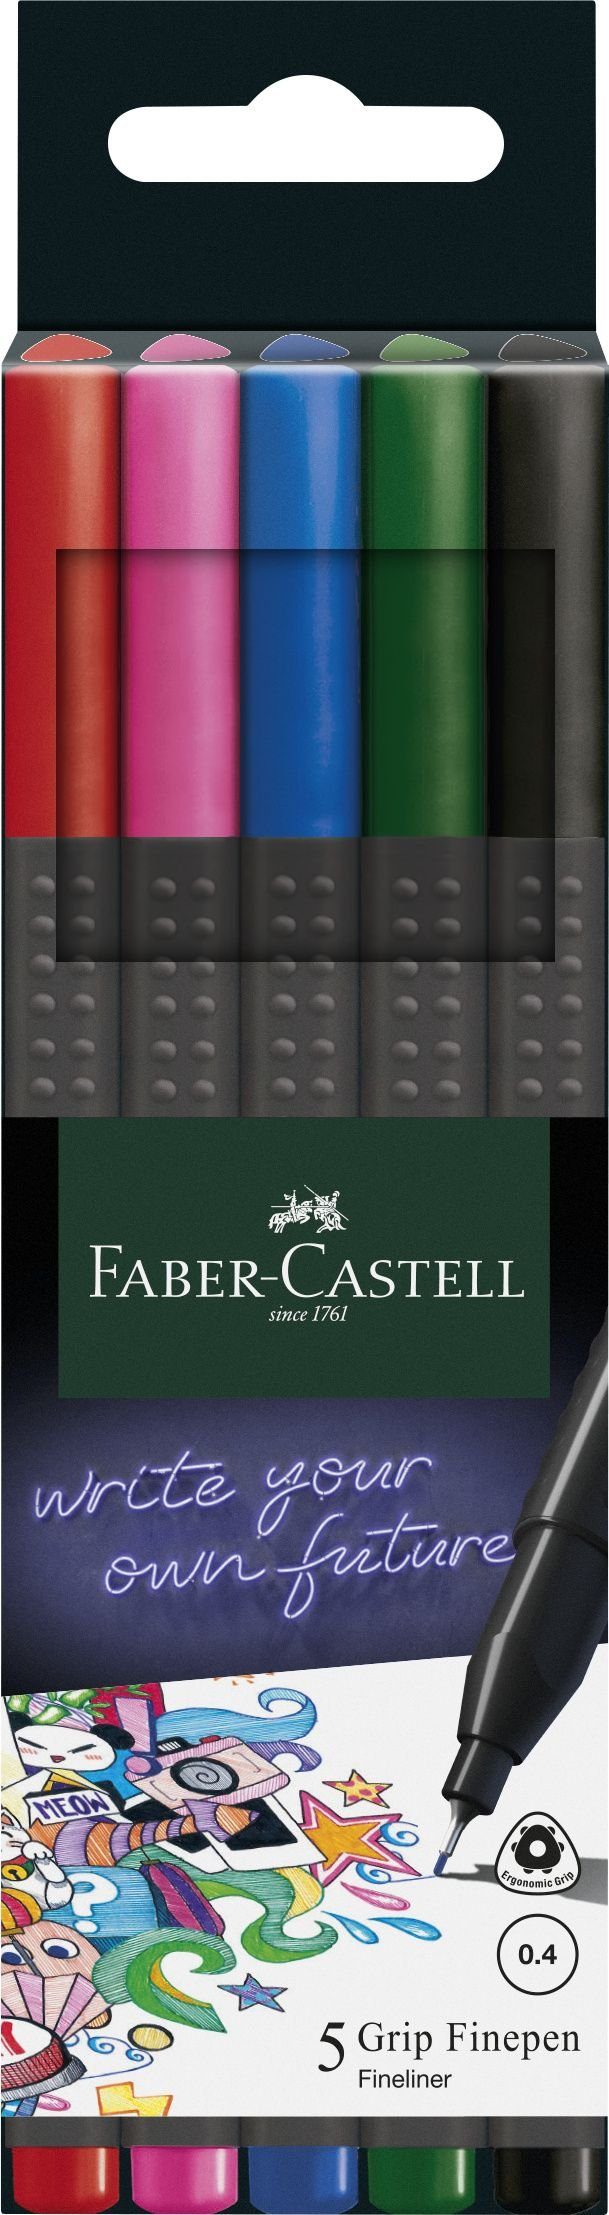 Faber-Castell Fineliner FABER-CASTELL Fineliner GRIP FINEPEN, 5er Kartonetui